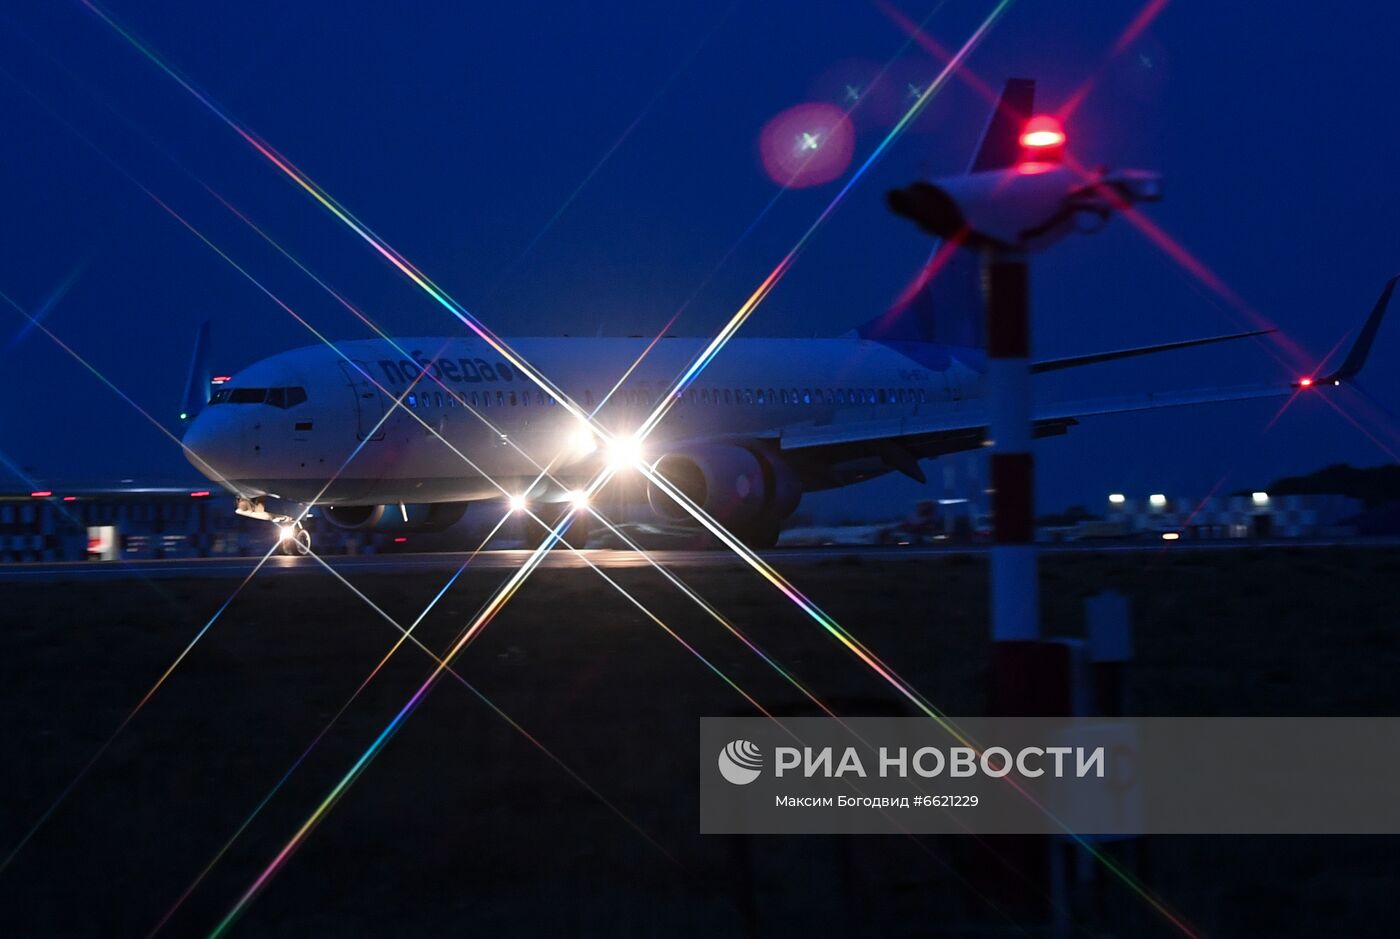 Самолеты в аэропорту Казани